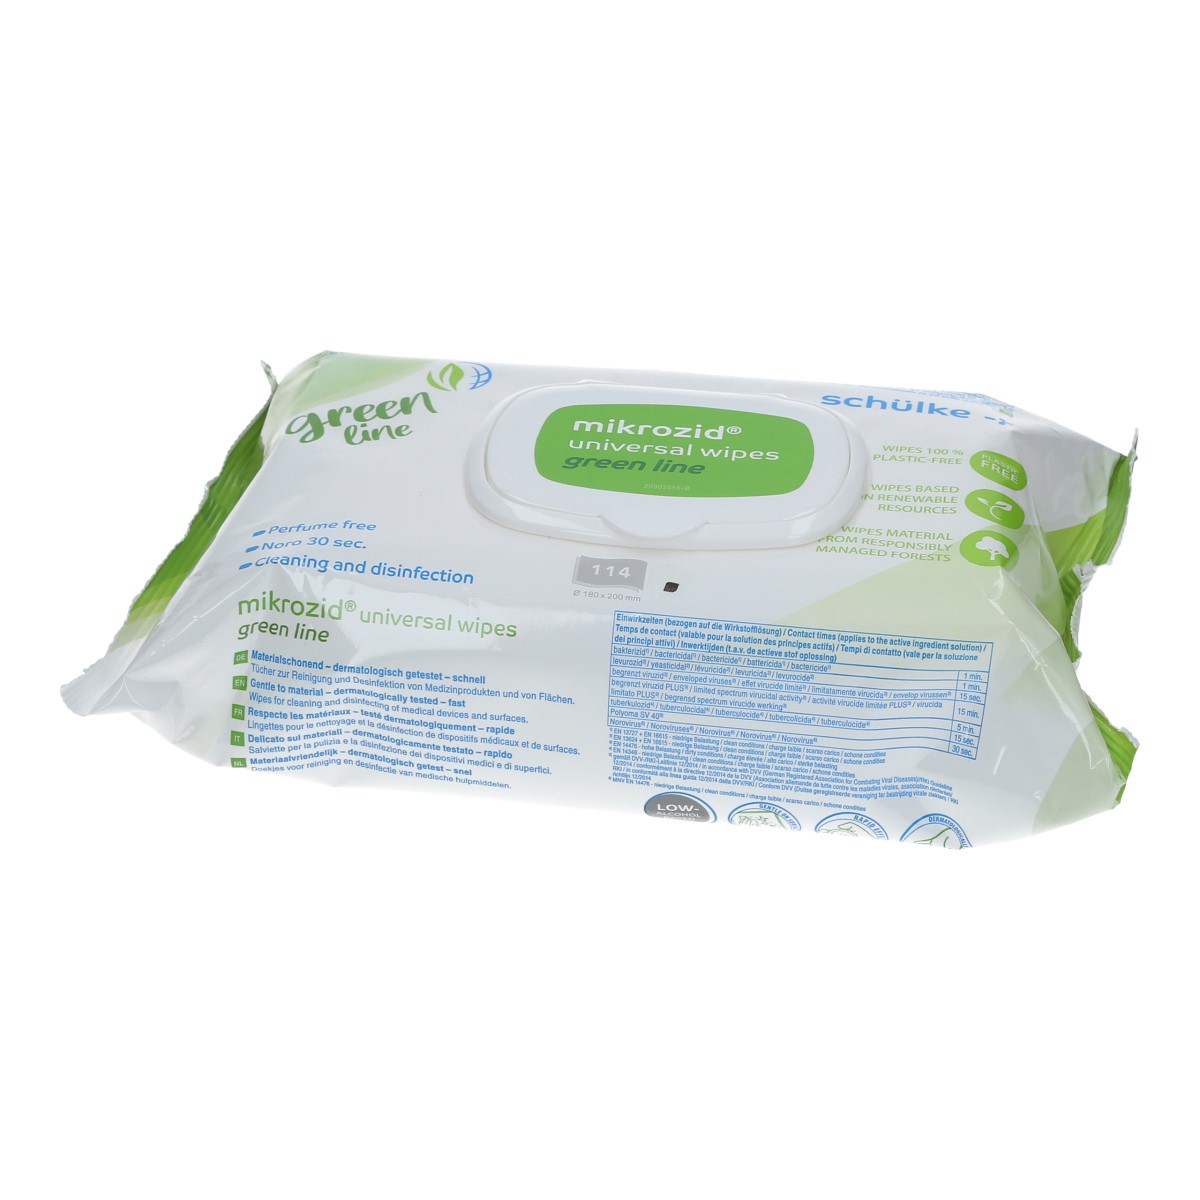 schülke mikrozid universal wipes green line premium Materialverträglich